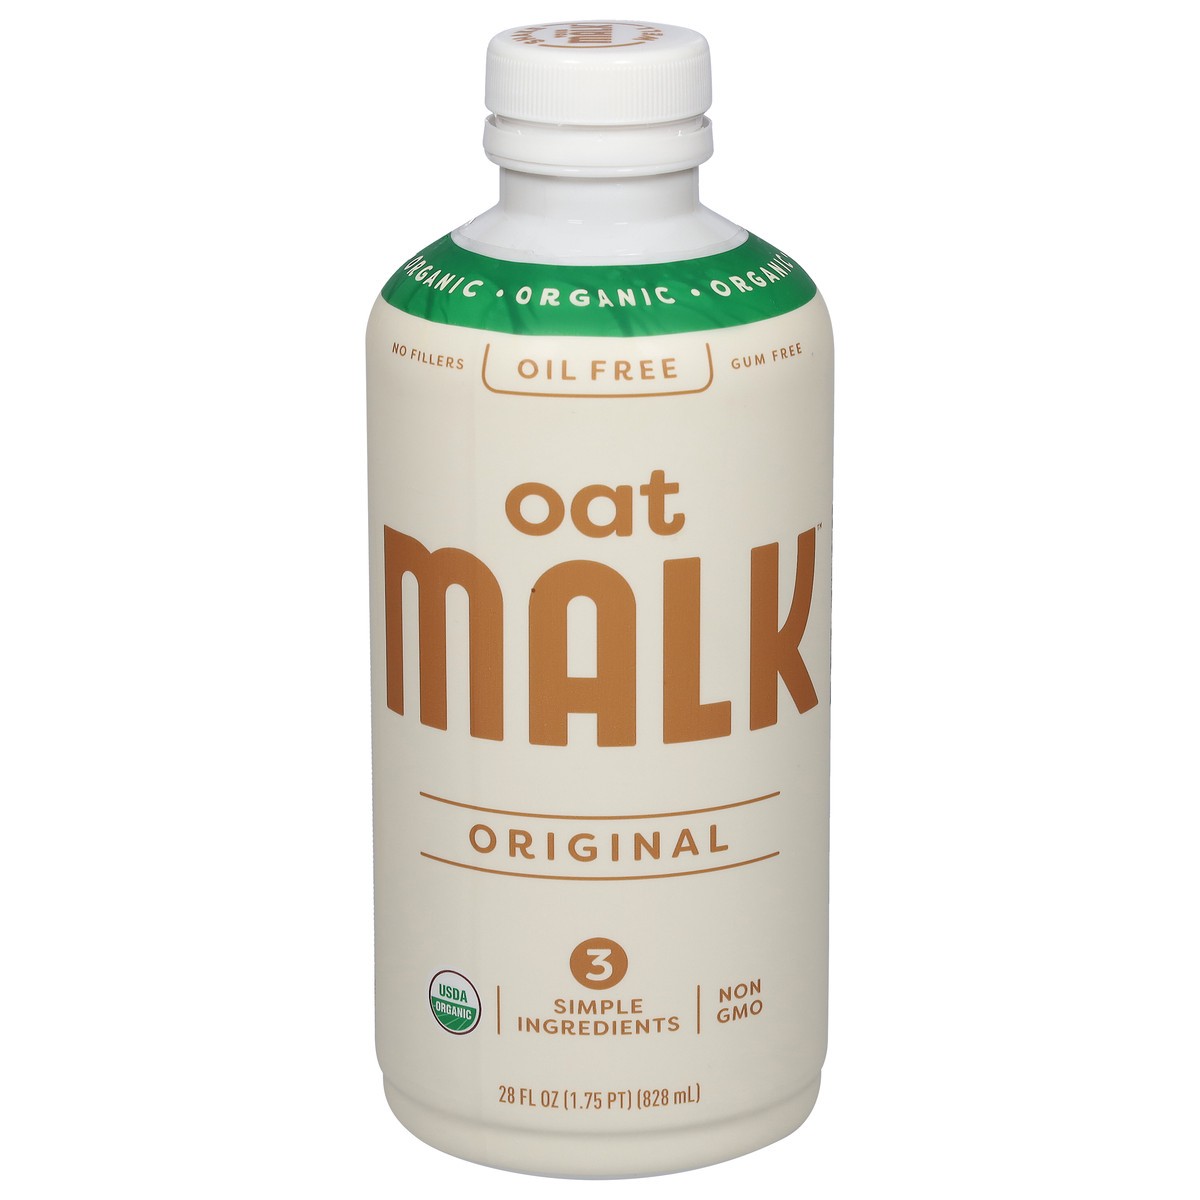 slide 6 of 11, Malk Organic Oil Free Original Oat Milk 28 fl oz, 28 fl oz